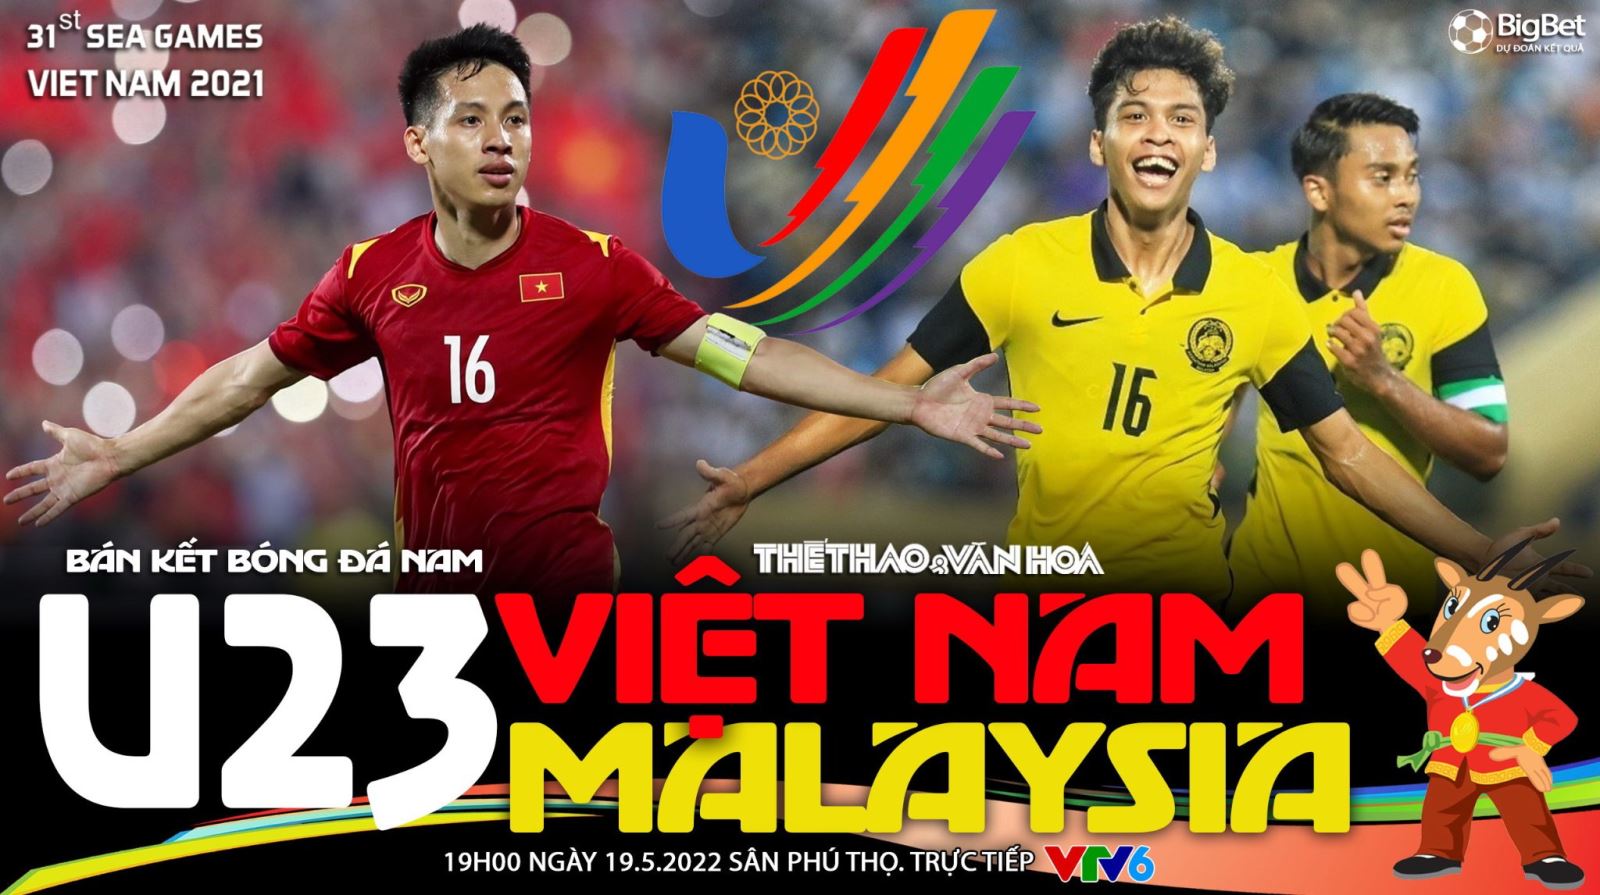 Soi kèo nhà cái U23 Việt Nam vs U23 Malaysia. VTV6 trực tiếp bóng đá SEA Games 31 (19h00, 19/5)_6285b5df6be76.jpeg